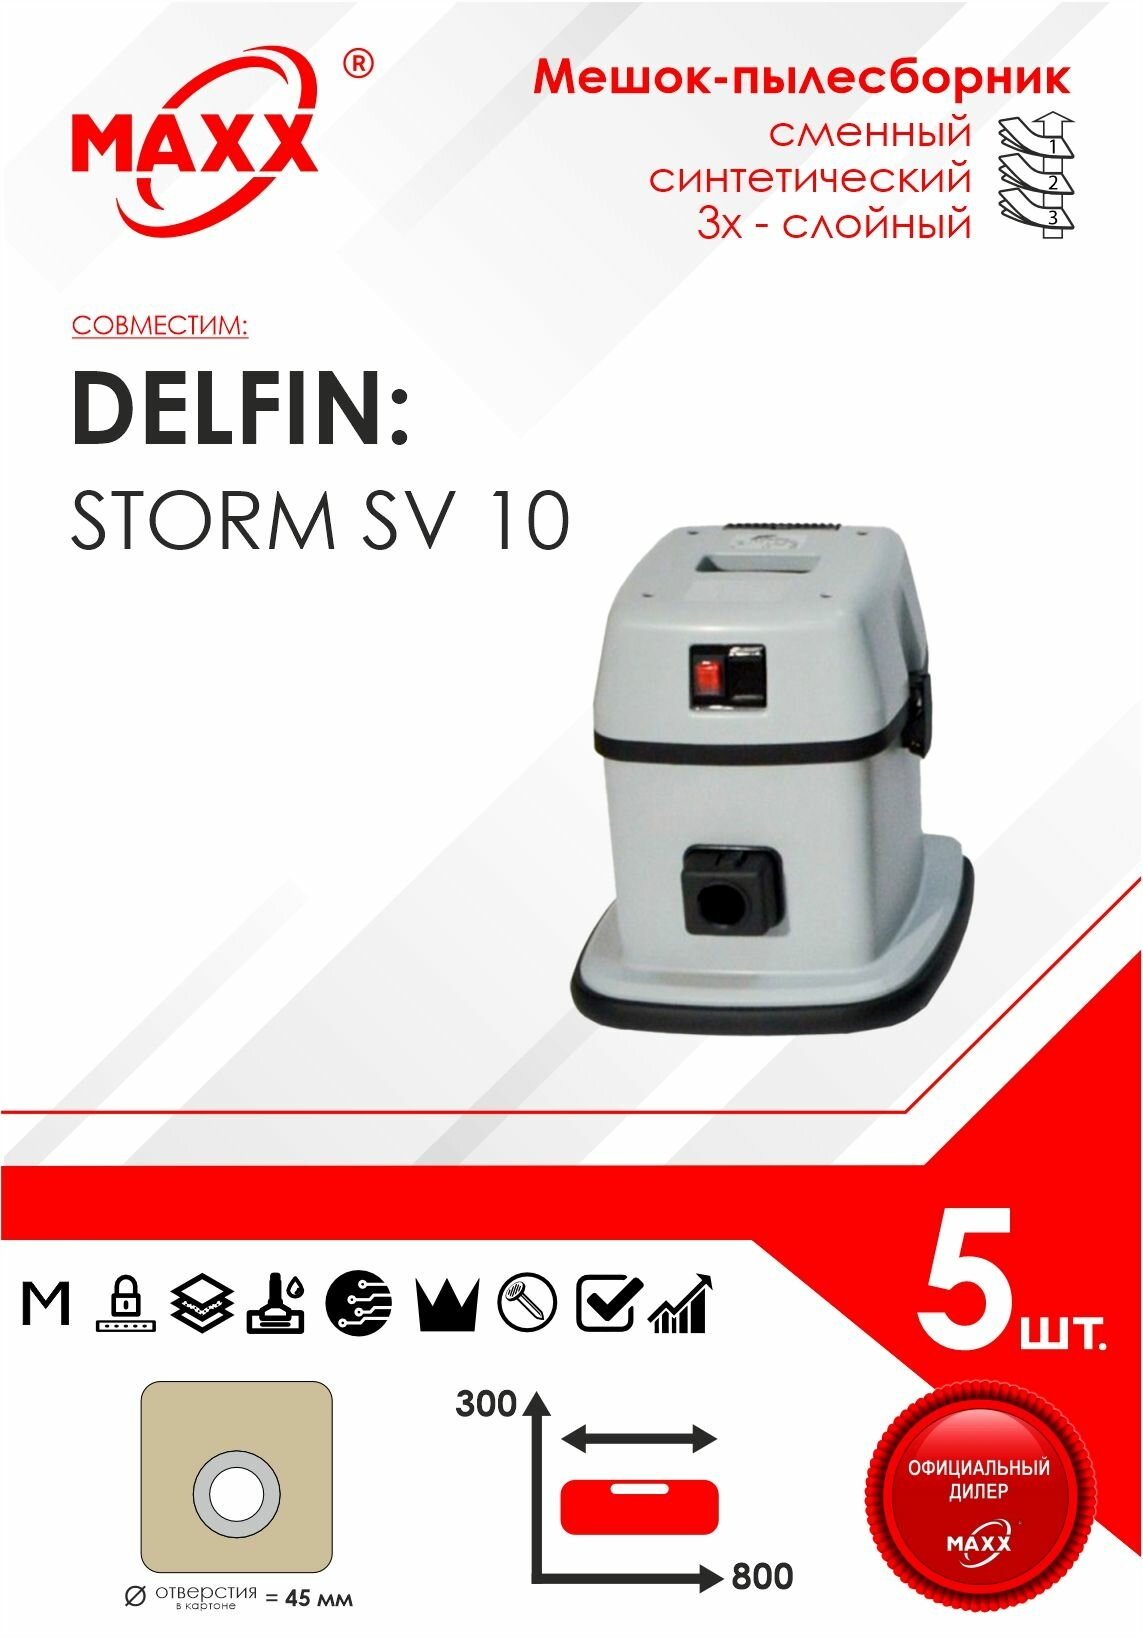 Мешок - пылесборник 5 шт. для пылесоса Delfin STORM SV10